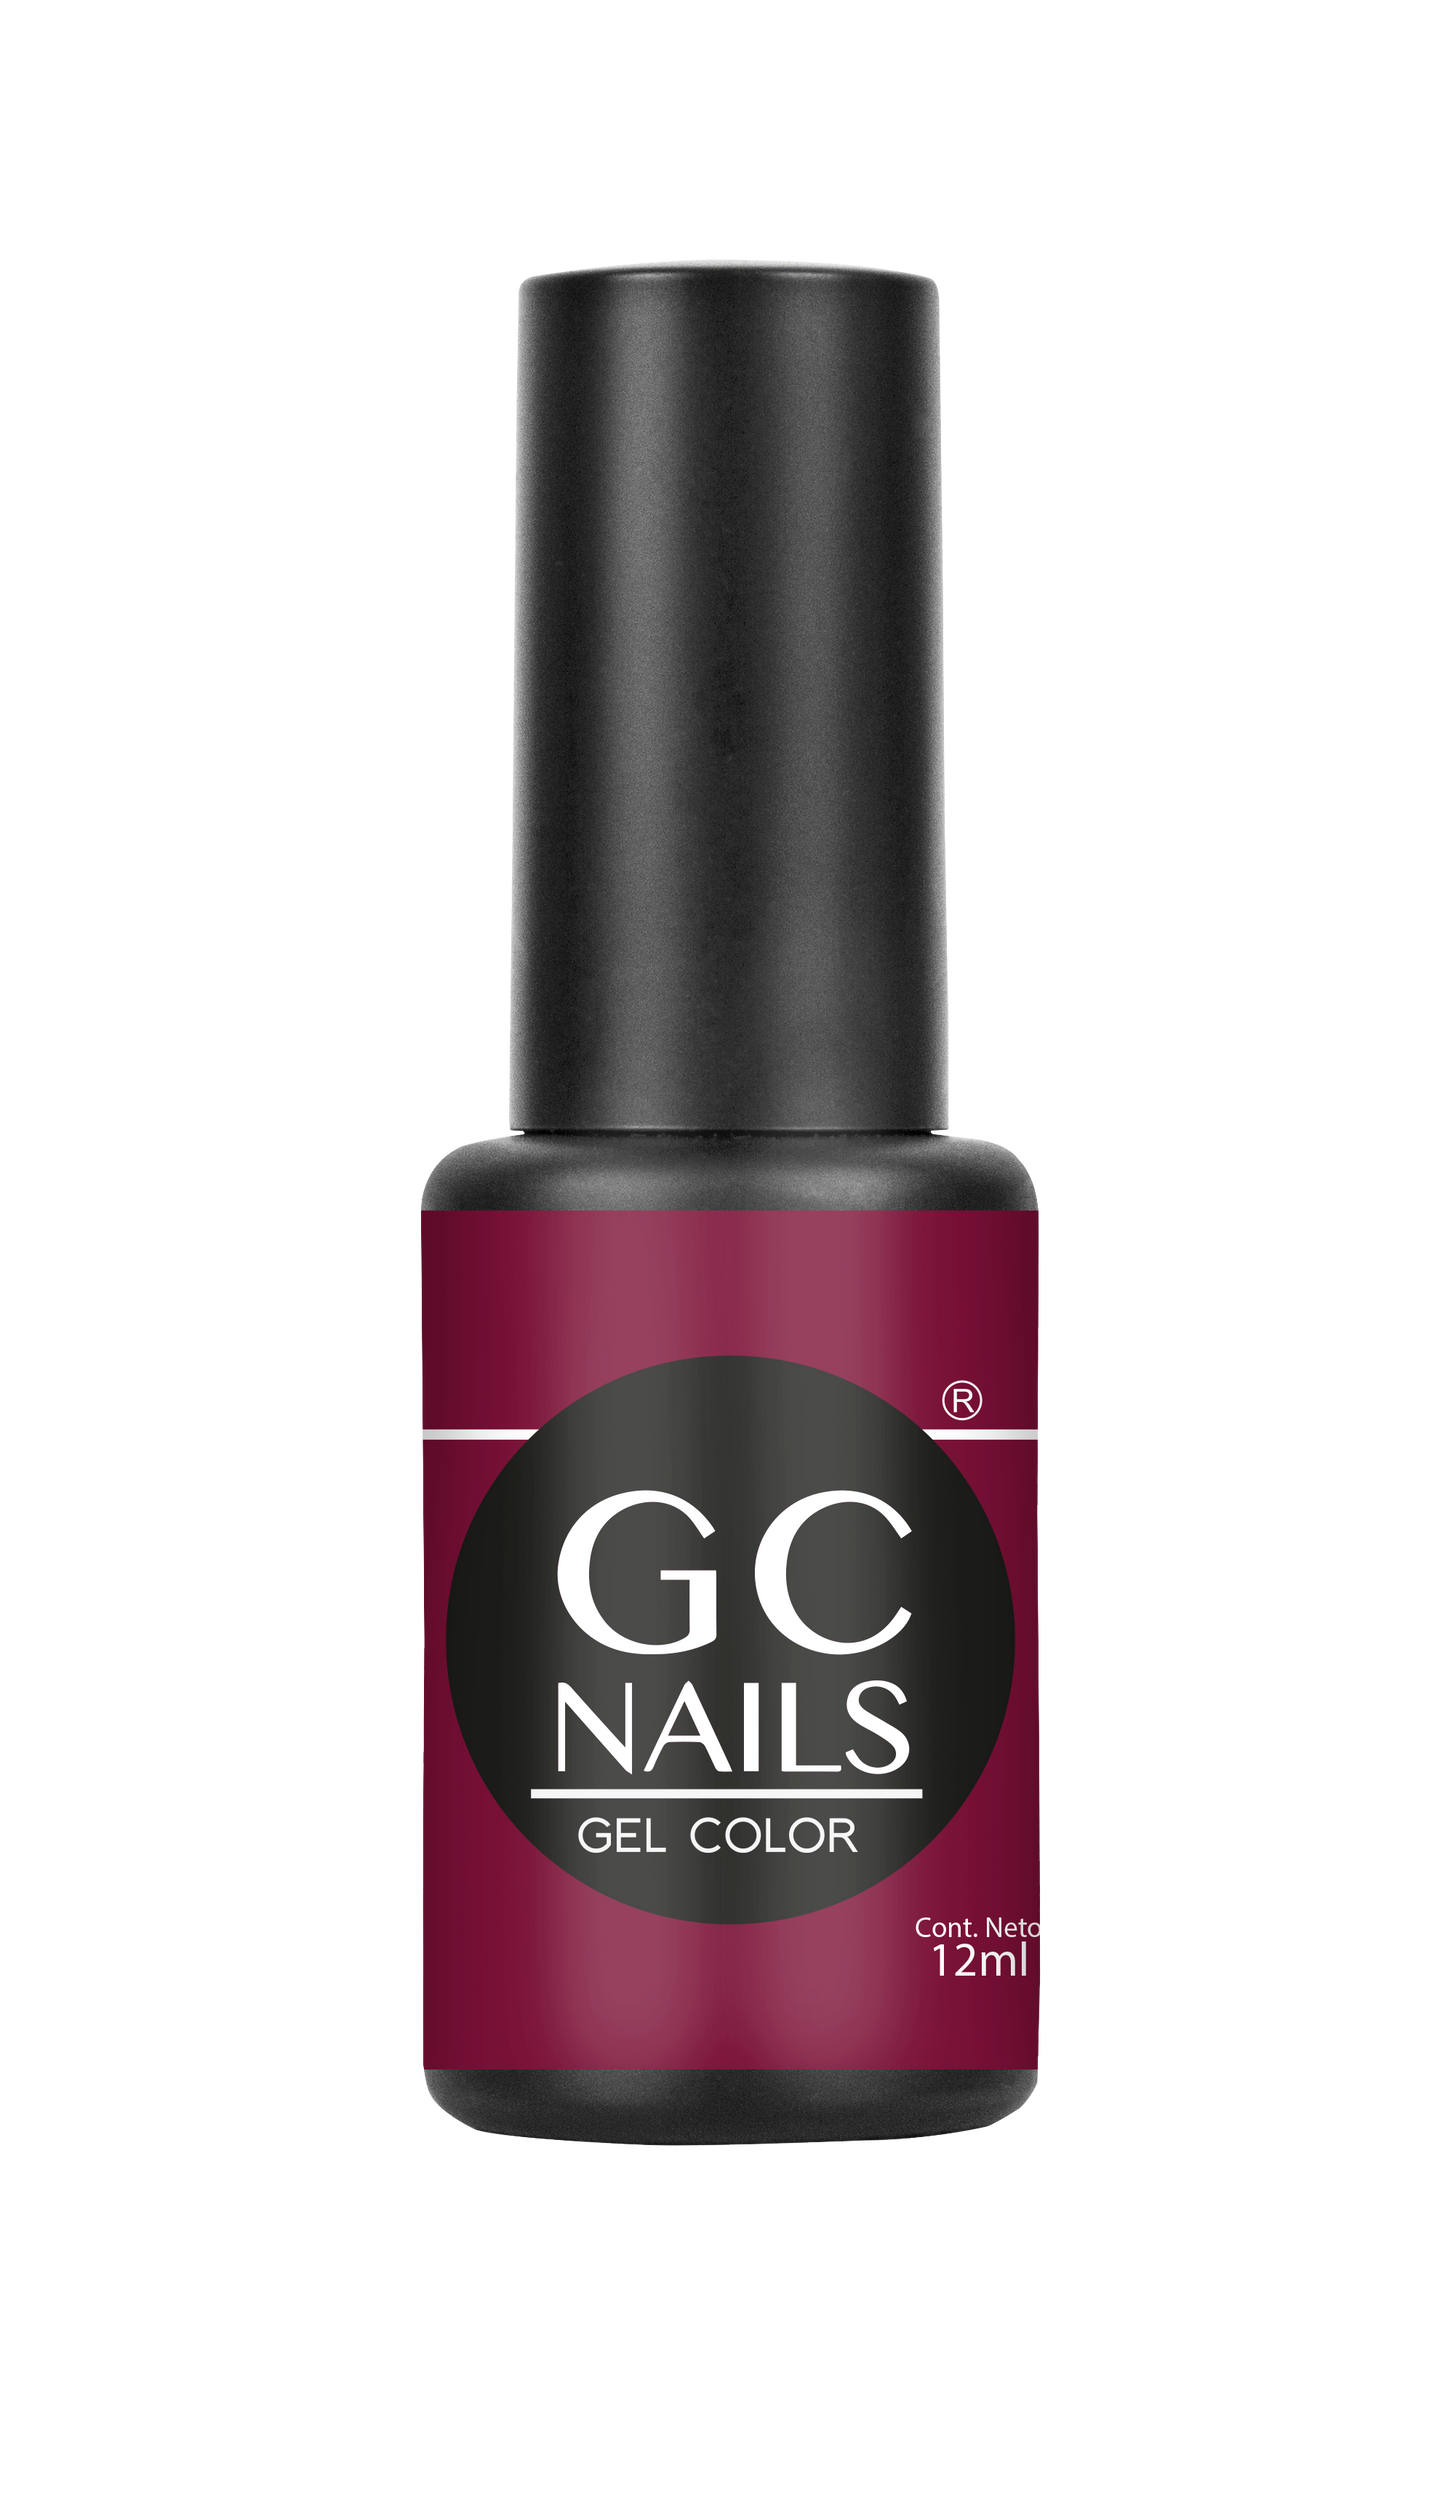 GC nails bel-color 12ml ARANDANO 63